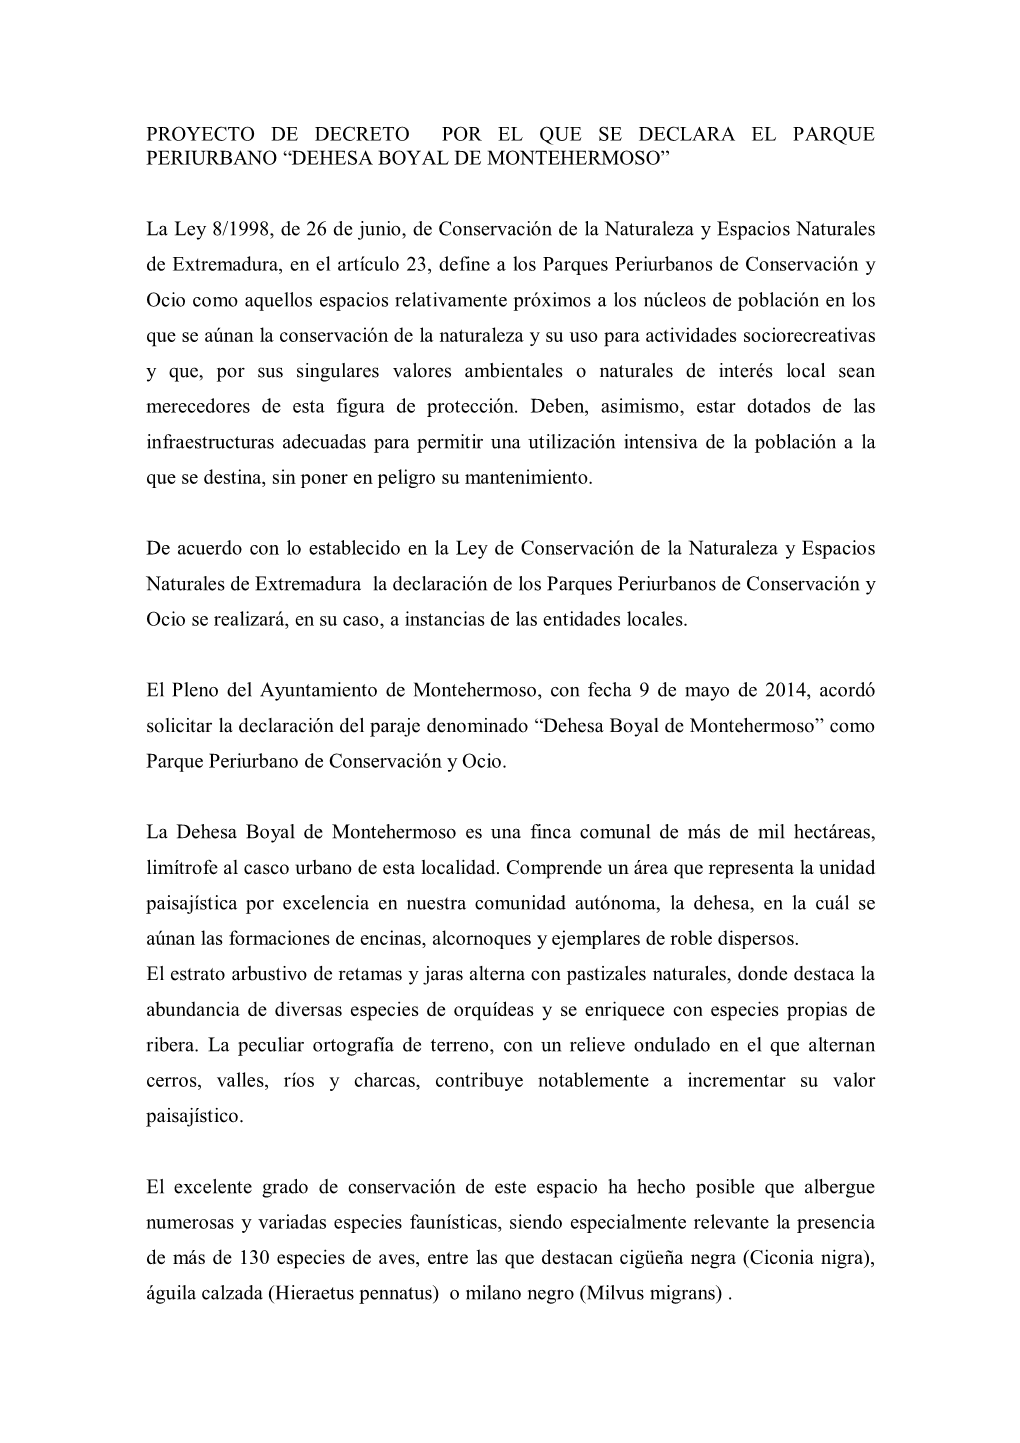 PROYECTO DE DECRETO POR EL QUE SE DECLARA EL PARQUE PERIURBANO “DEHESA BOYAL DE MONTEHERMOSO” La Ley 8/1998, De 26 De Junio